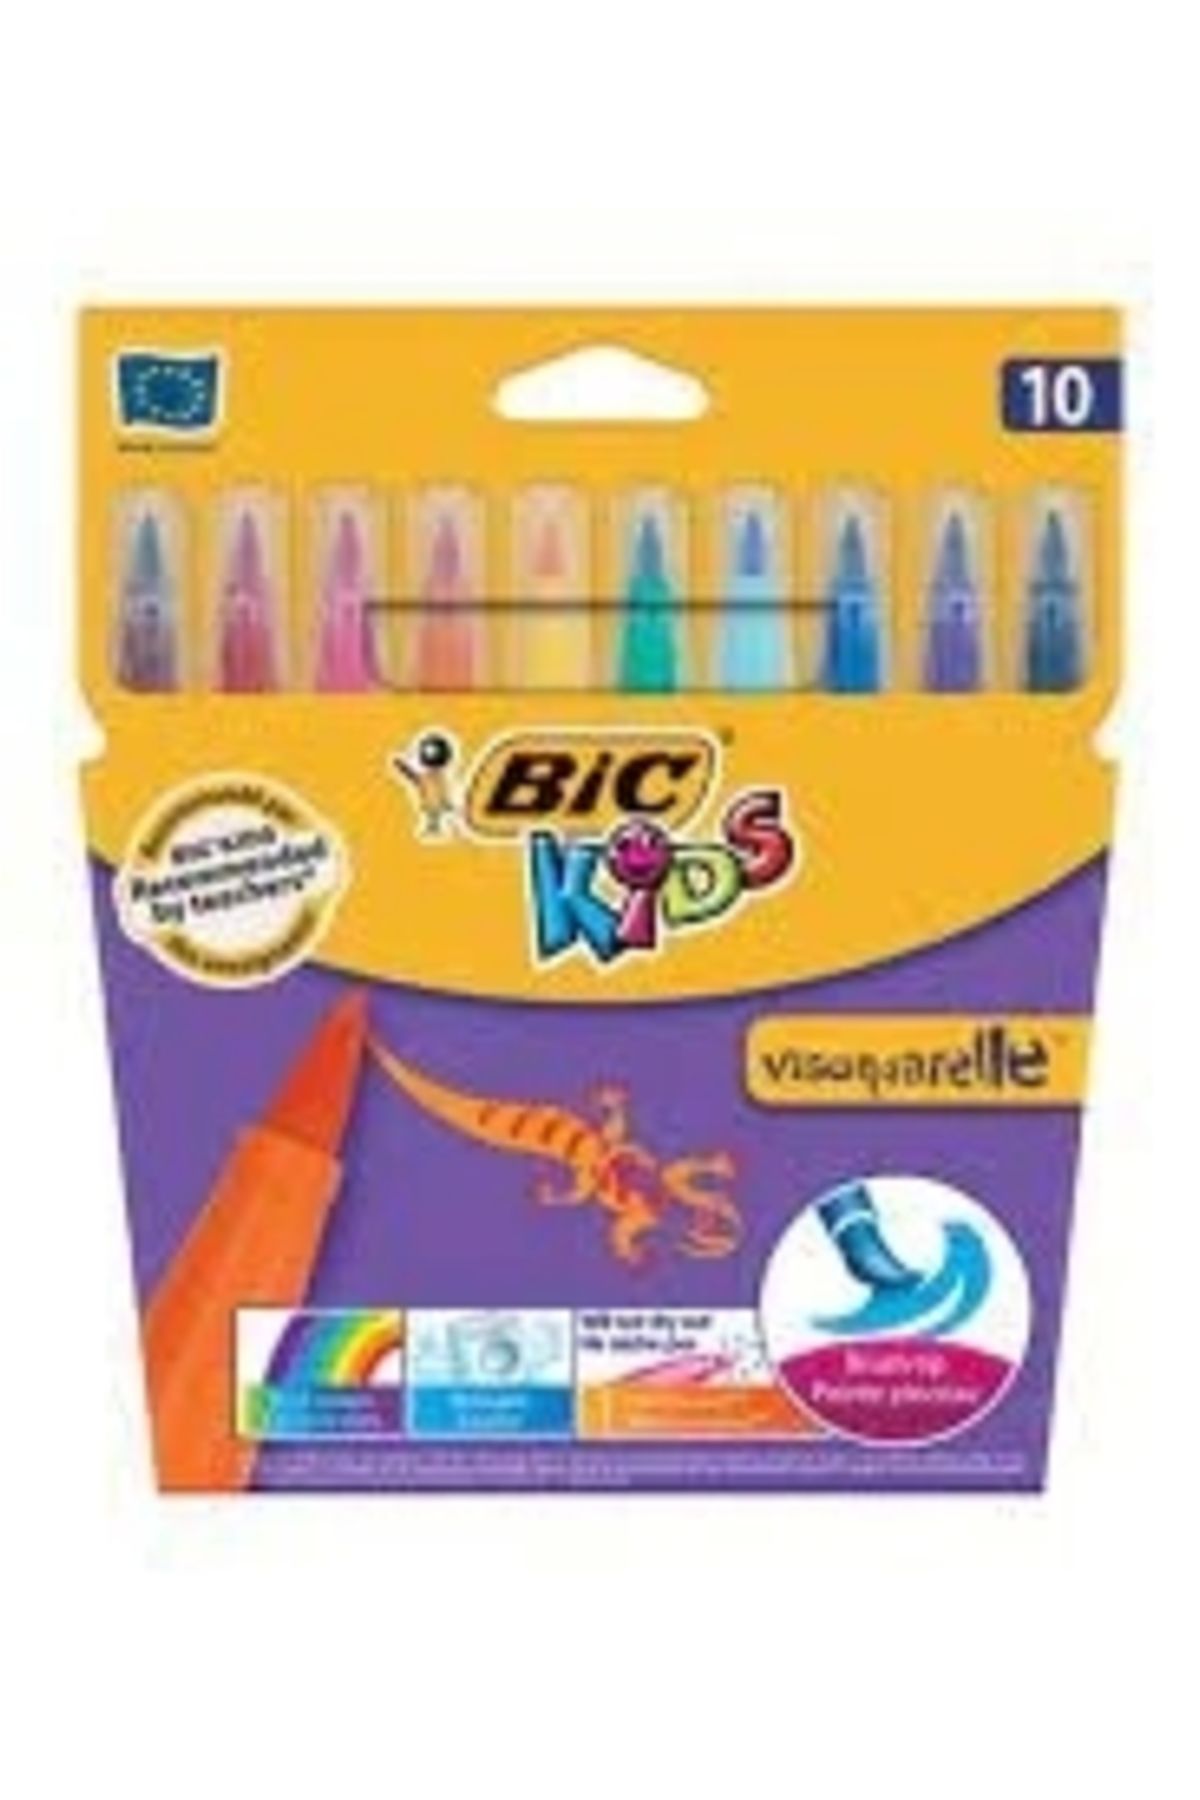 Bic Kids Visaquarelle Fırça Uçlu Keçeli Boya 10lu